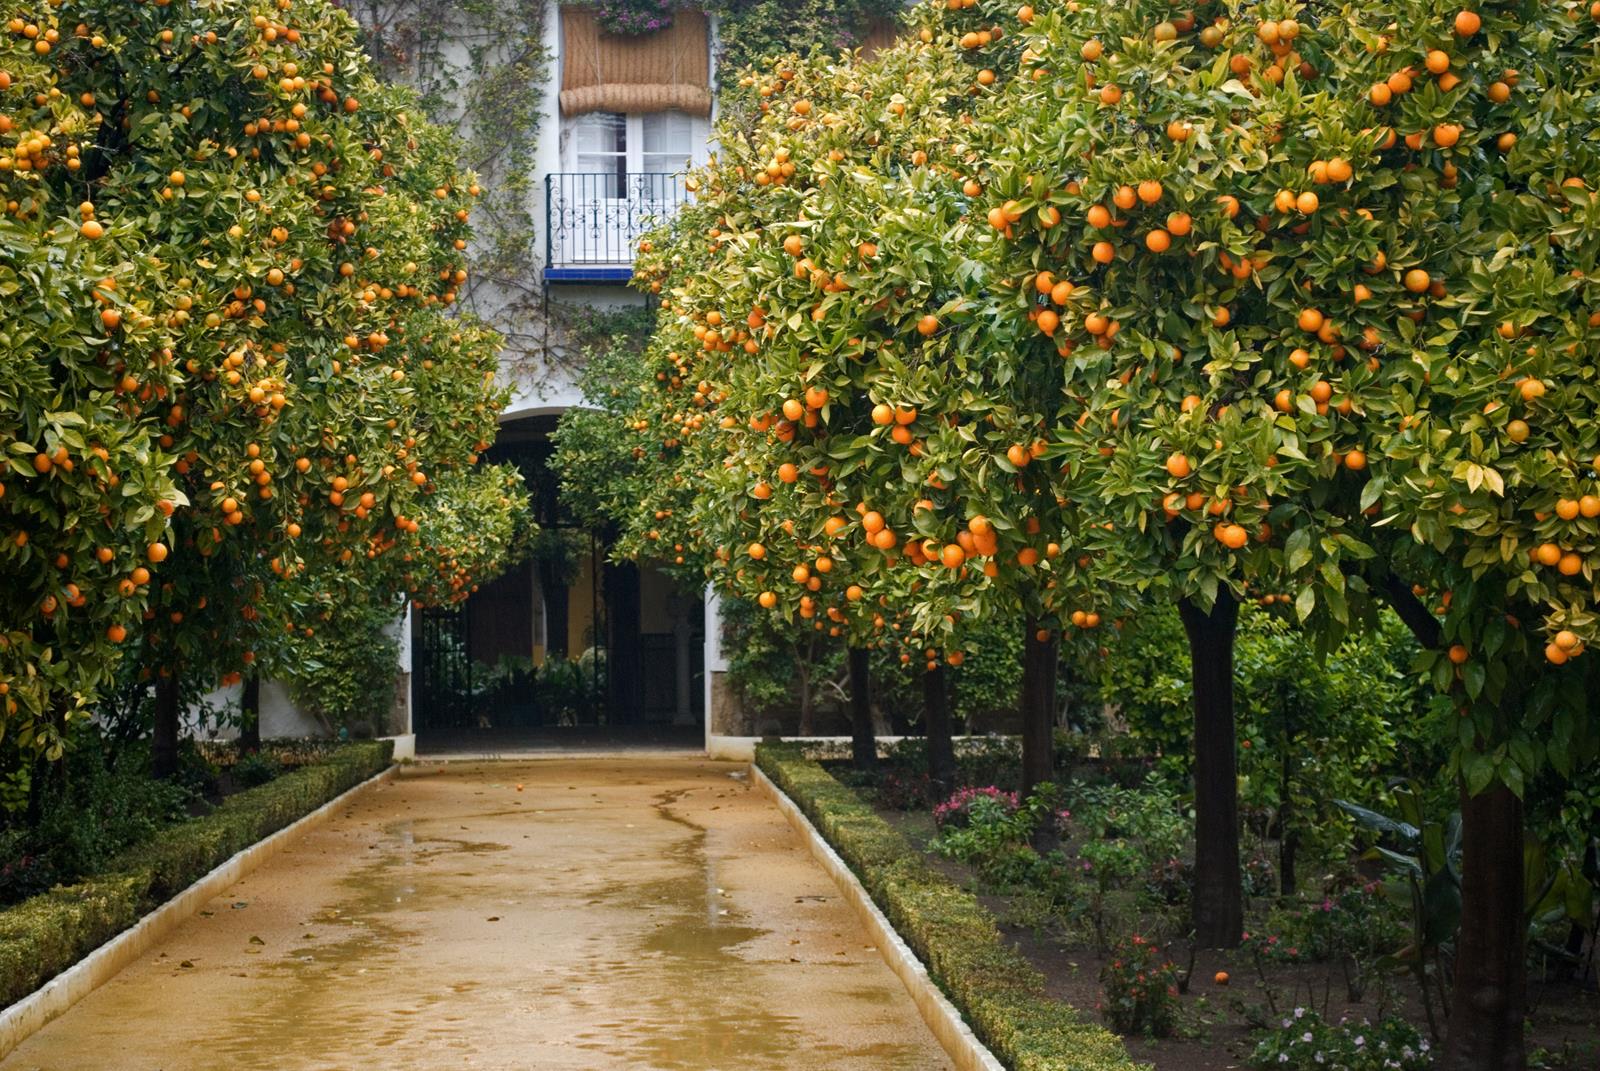 Апельсины (в Испании, Италии, Португалии, Греции),